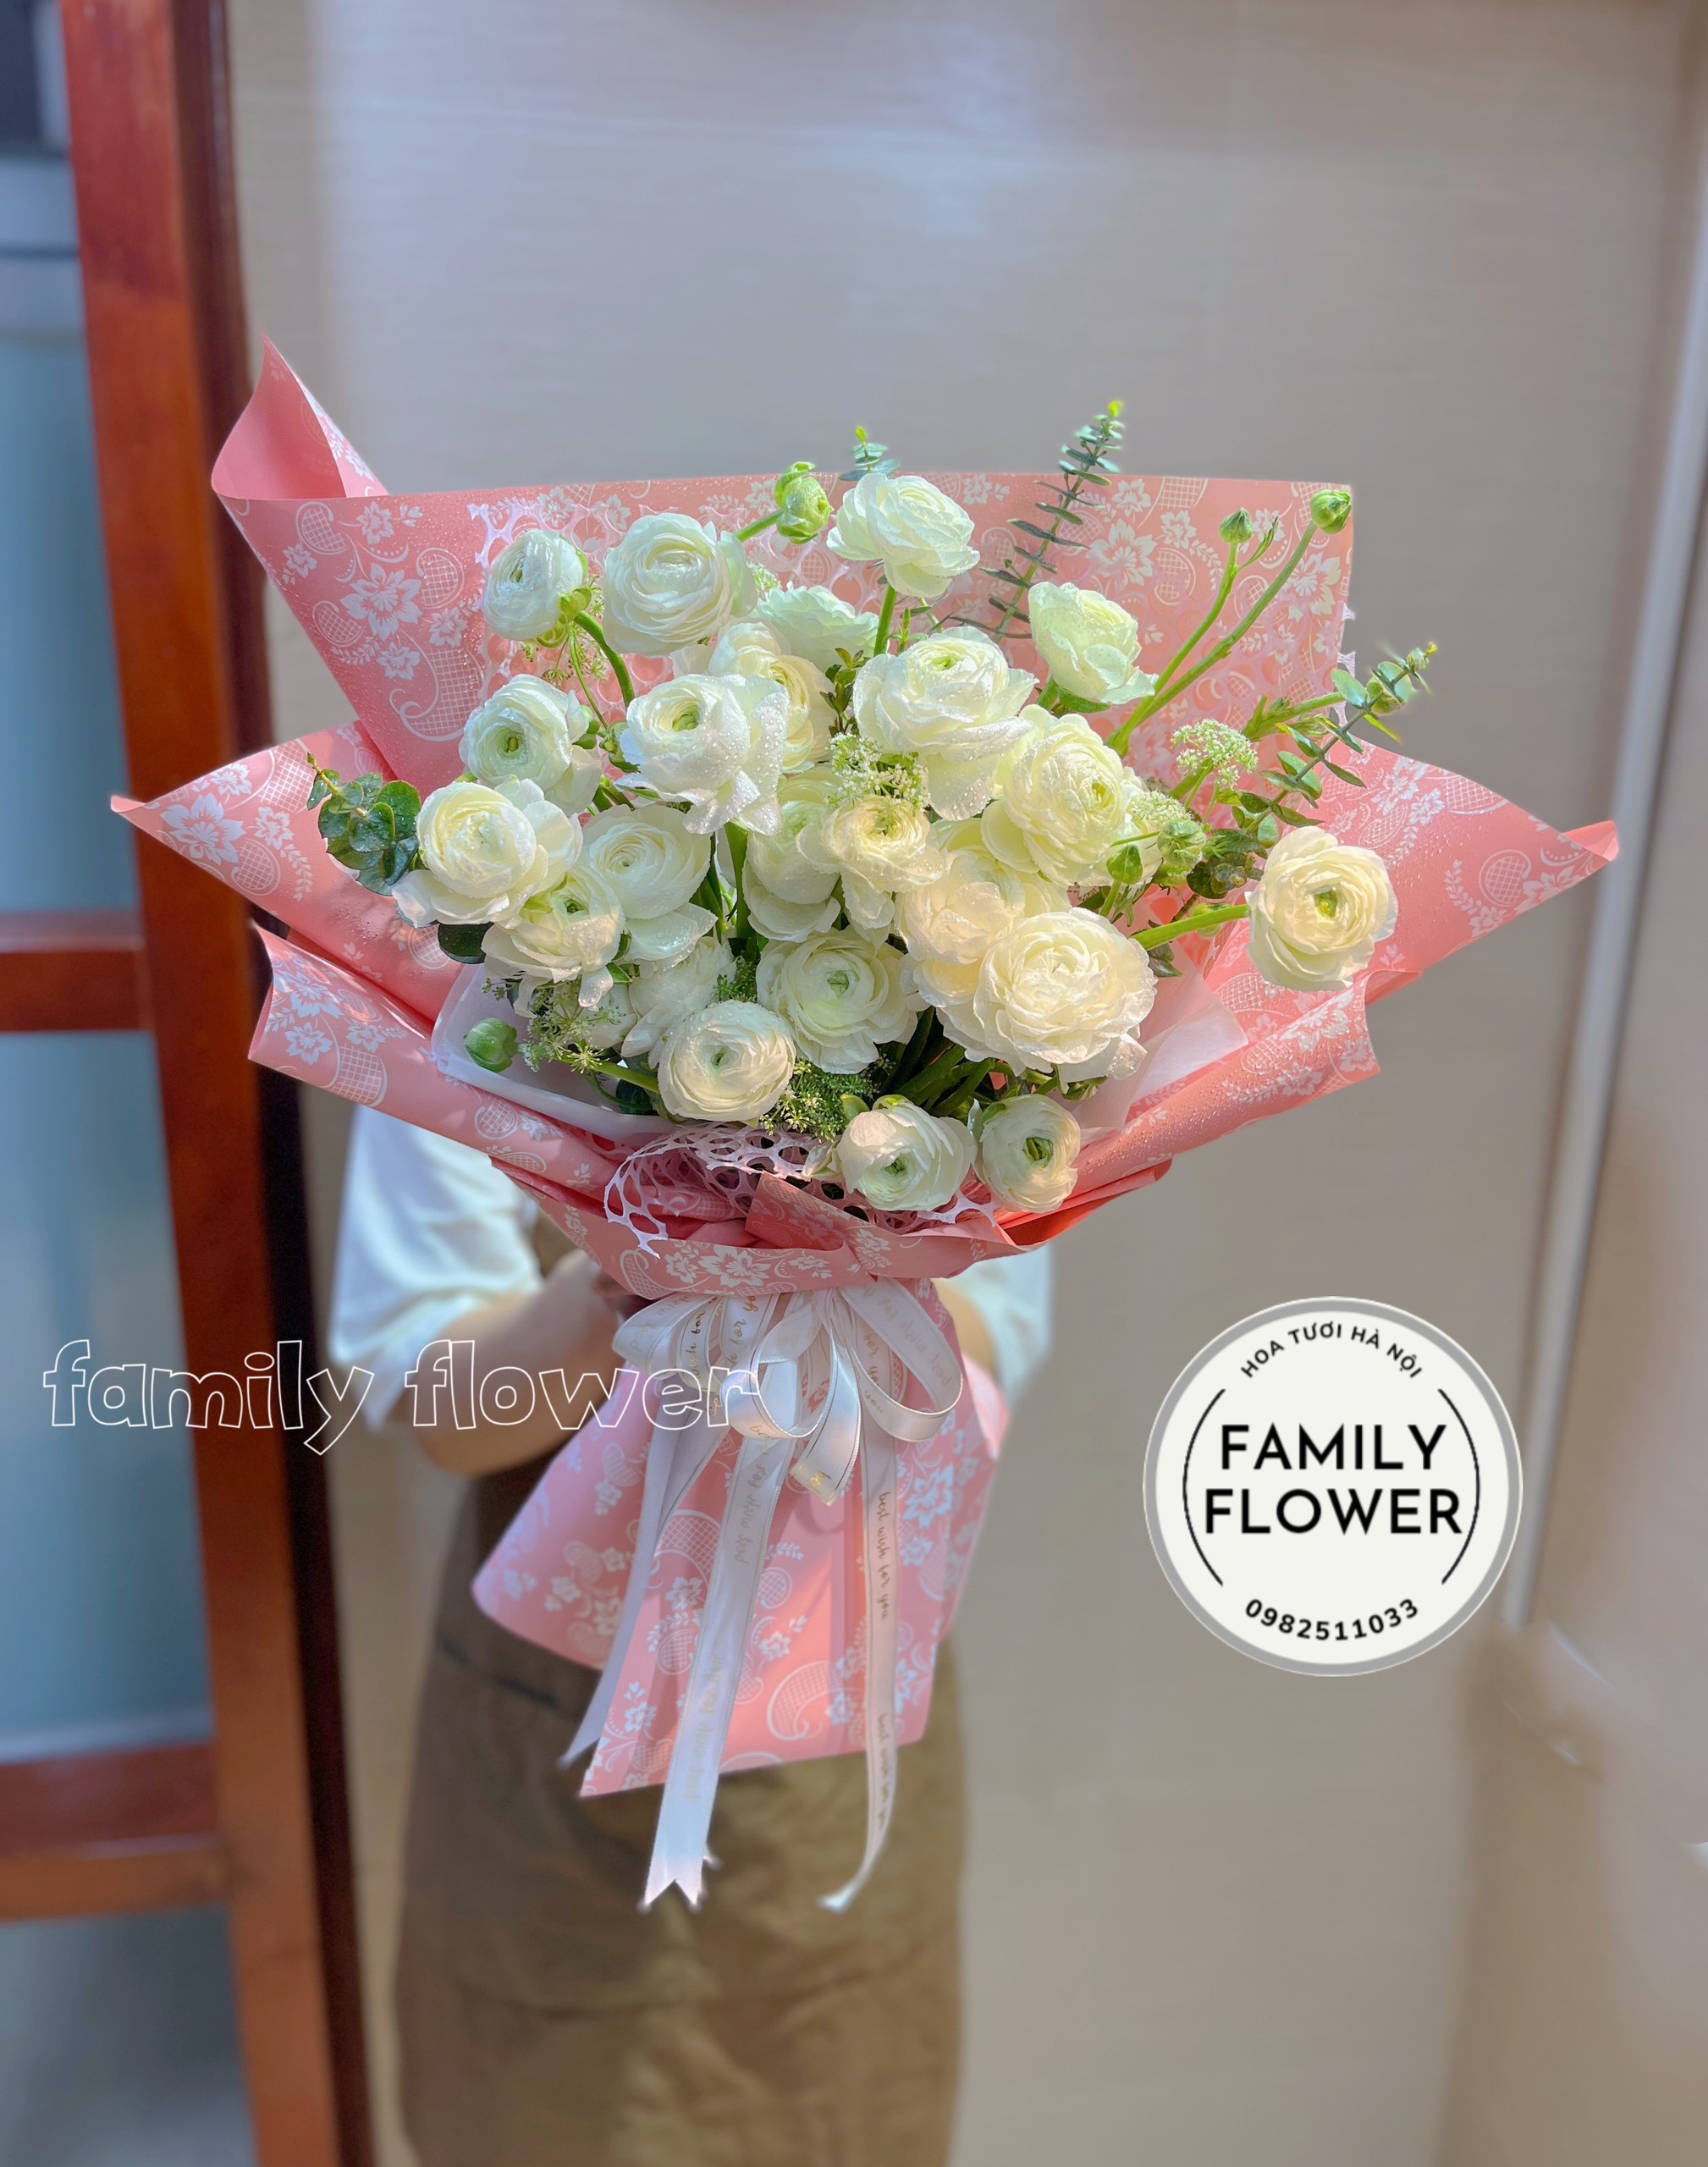 Bó hoa mao lương trắng tặng bạn gái nhân dịp 8 tháng 3 , 20 tháng 10 ở Hà Nội ! Hoa mao lương hà nội